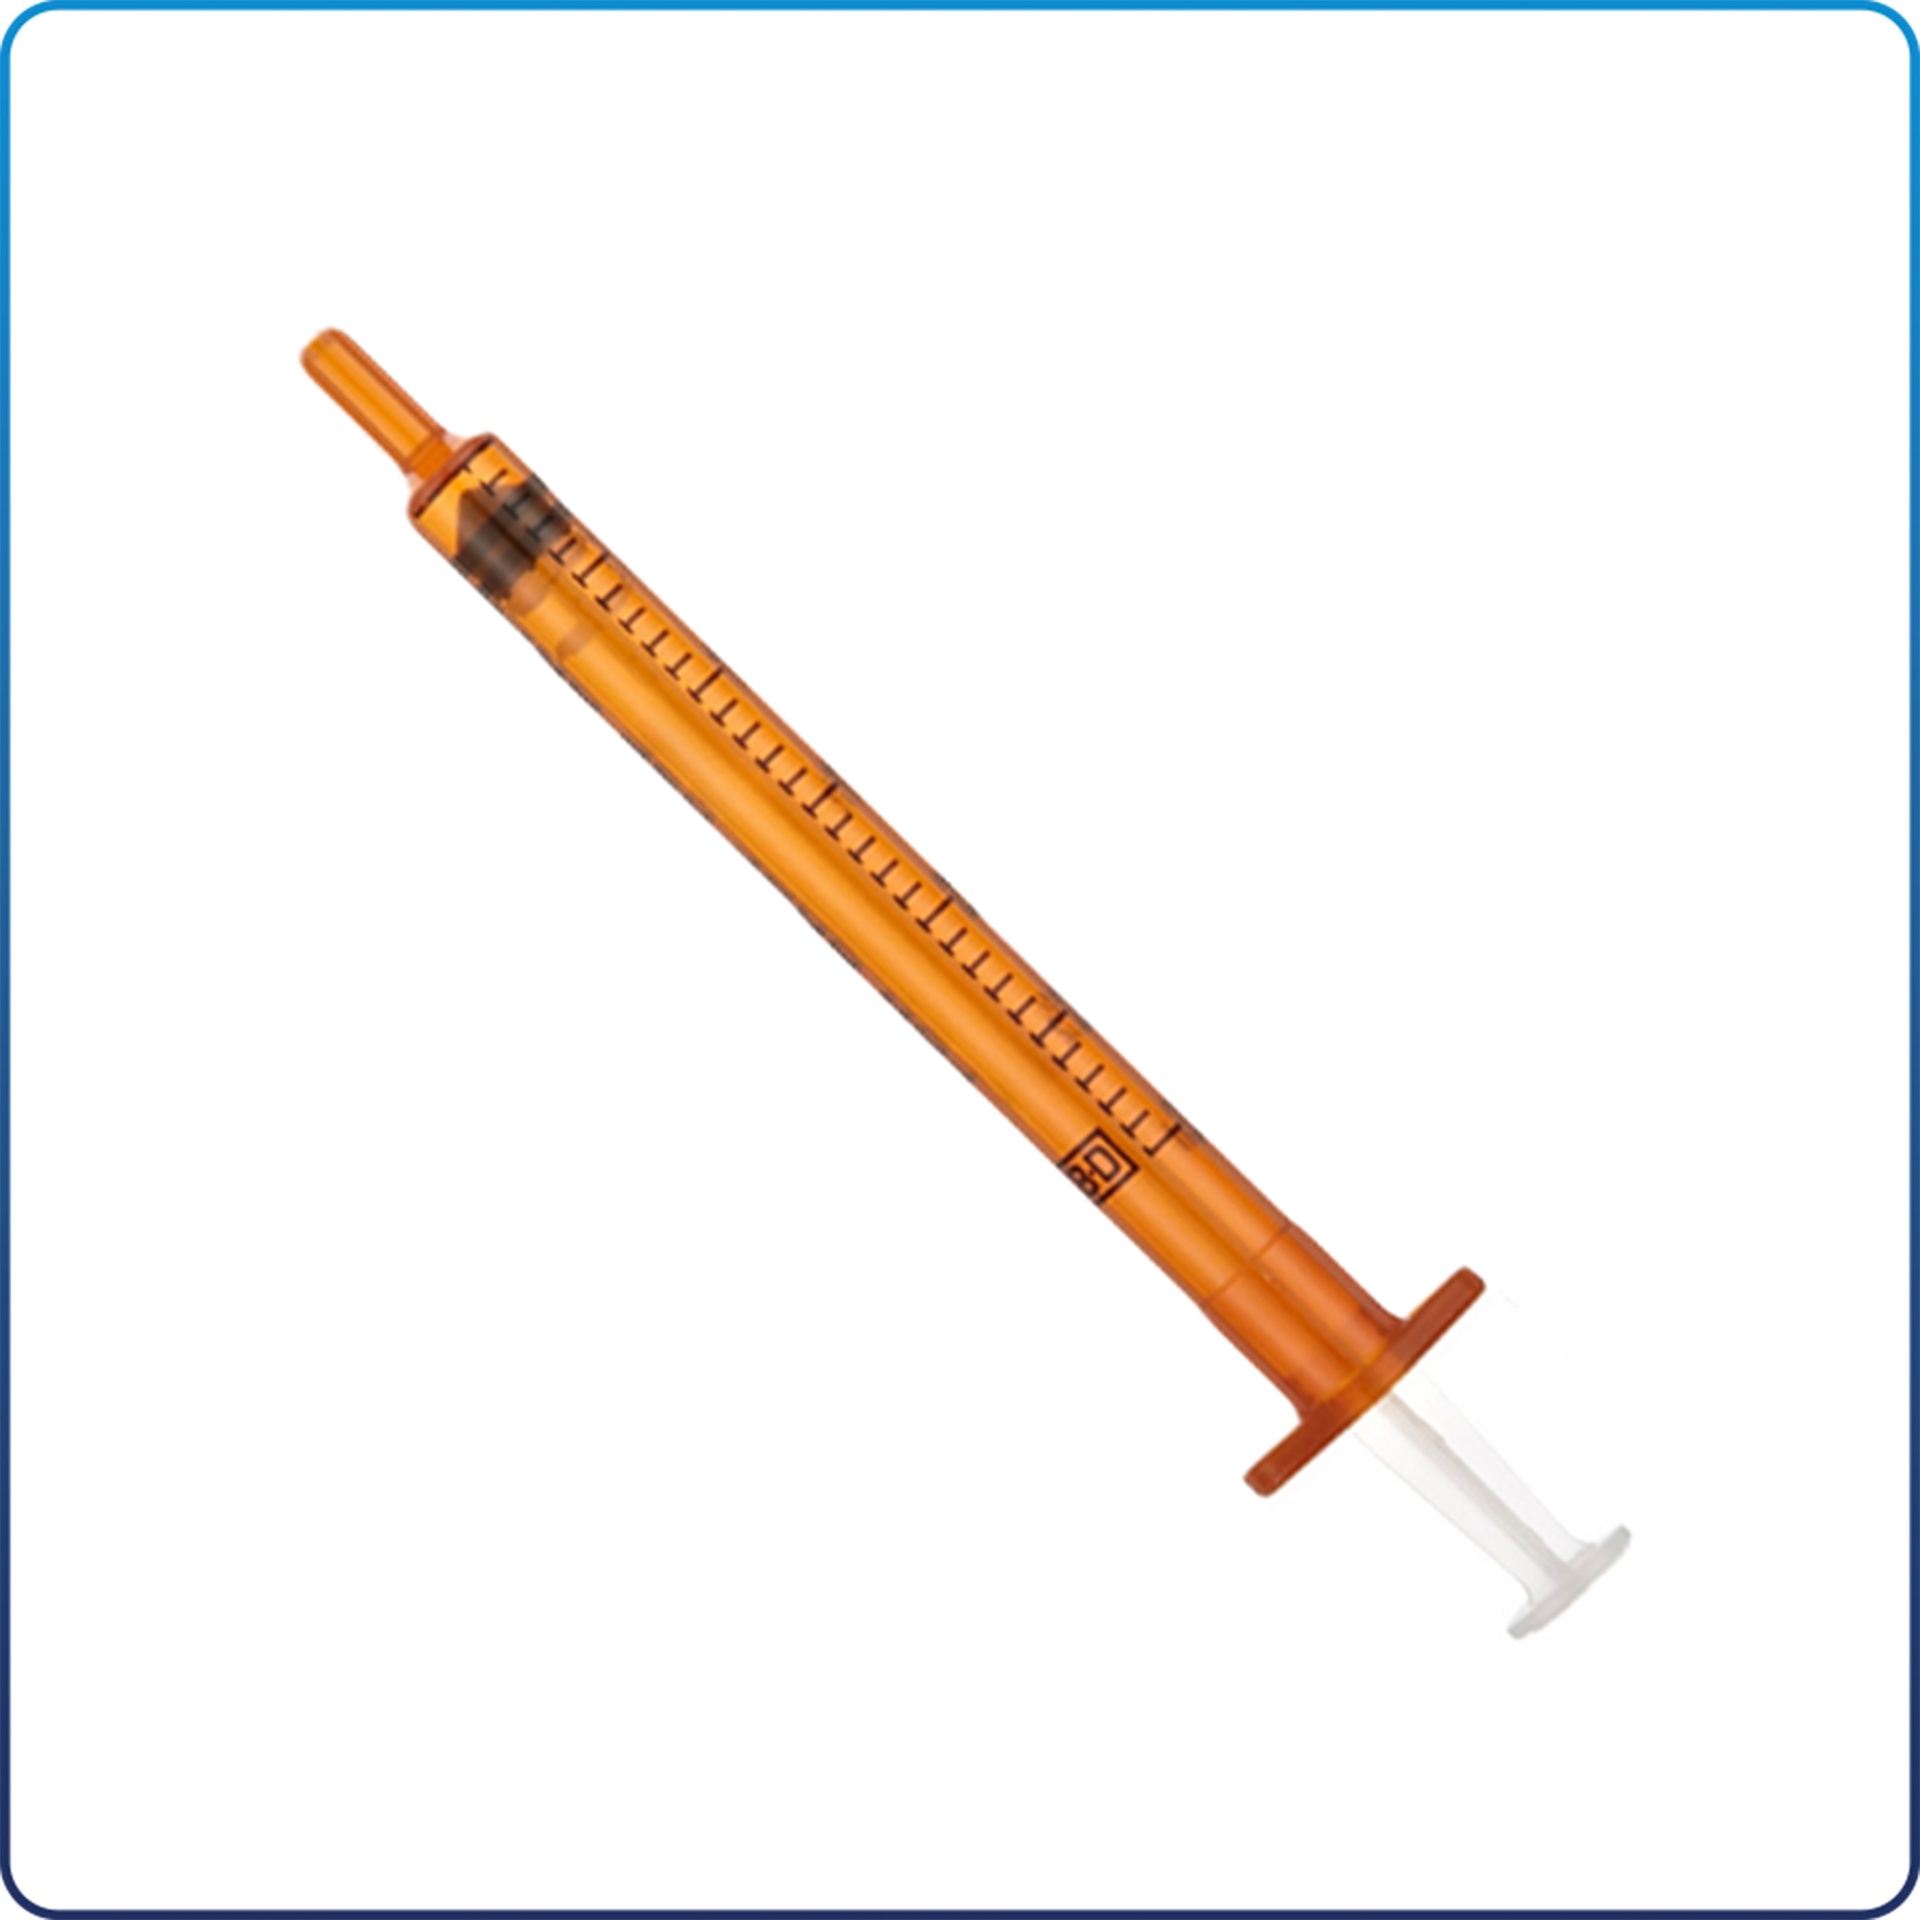 Oral Syringe Amber w/ Tip Cap